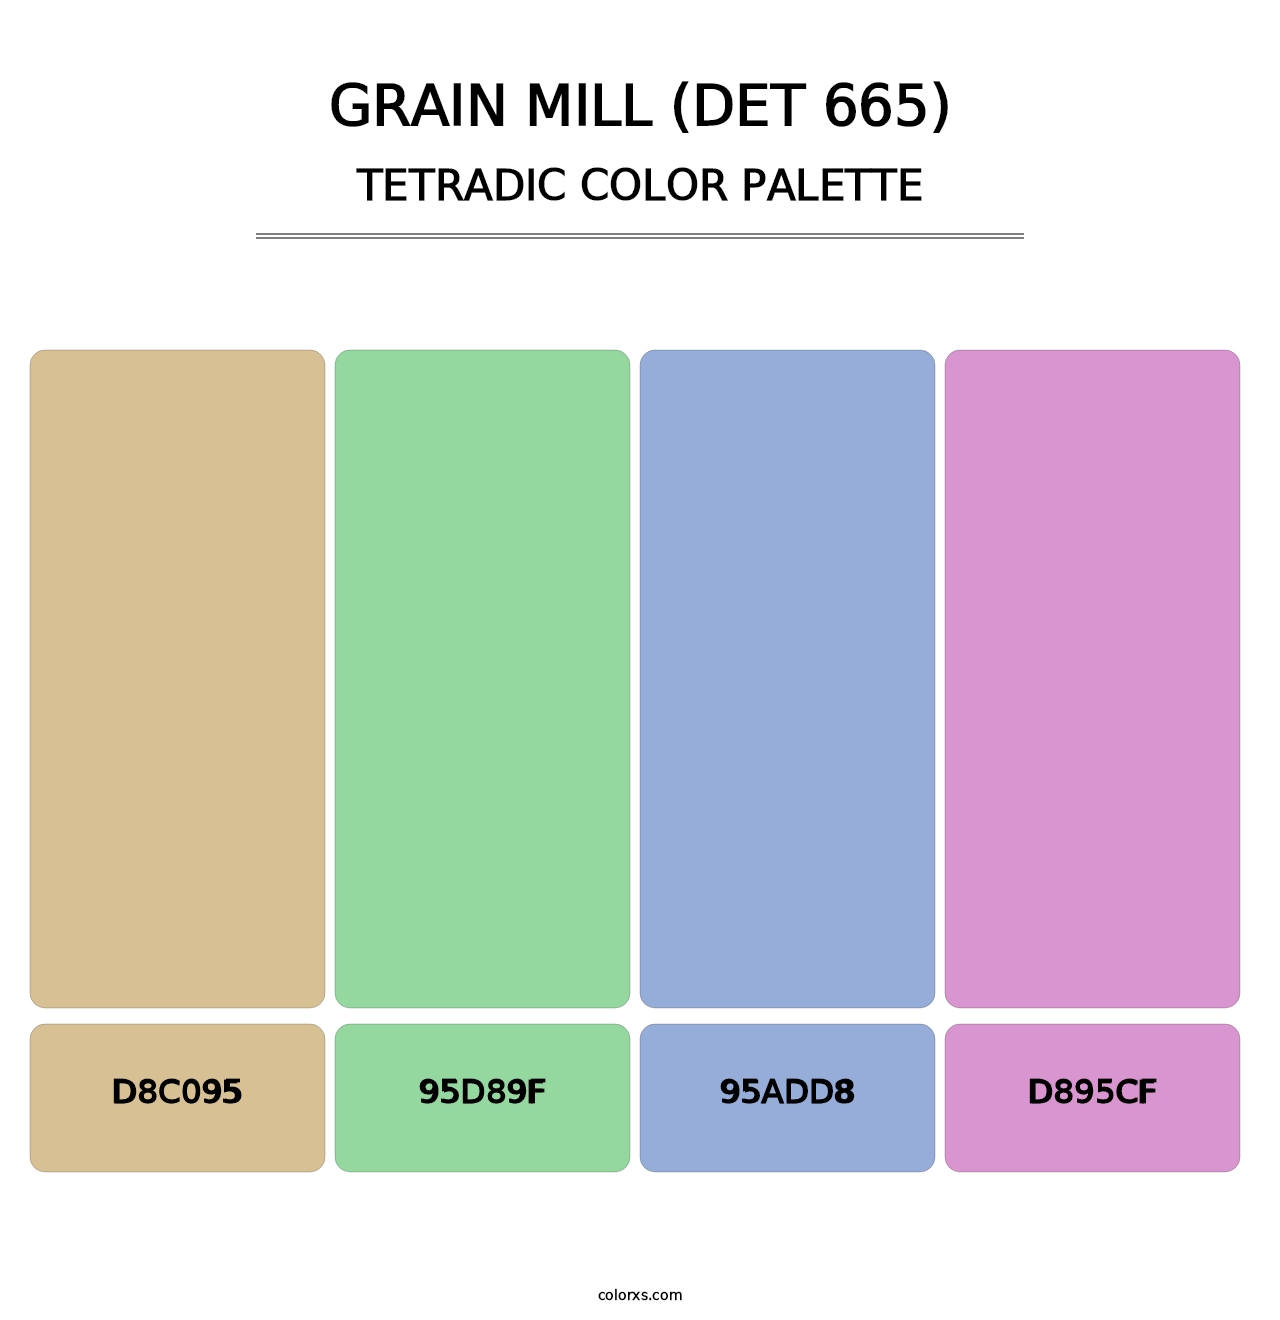 Grain Mill (DET 665) - Tetradic Color Palette